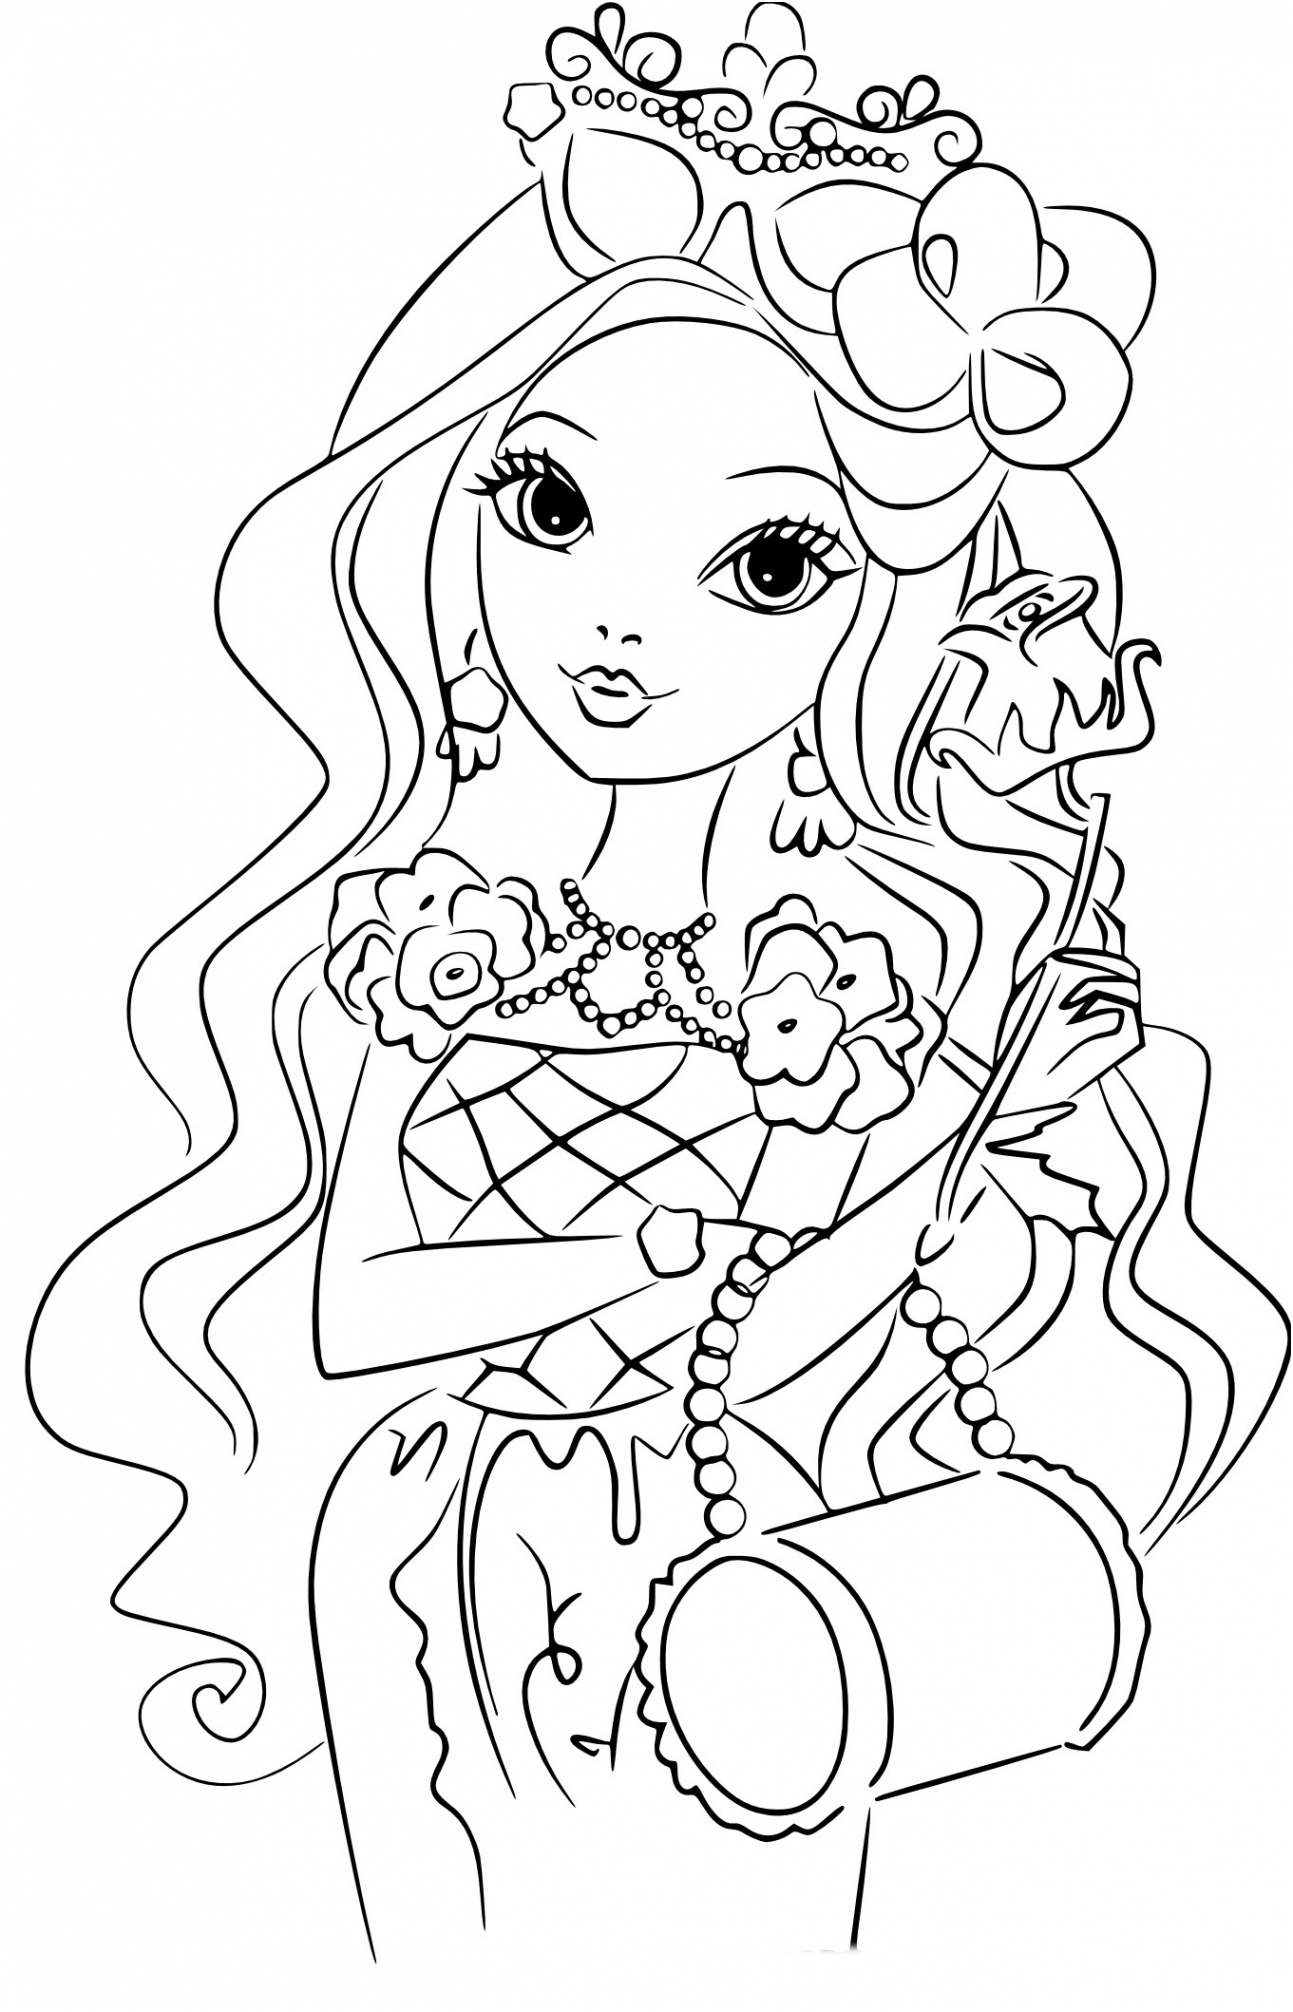 une jeune fille belle avec une couronne de fleurs sur sa tete within coloriage jolie fille